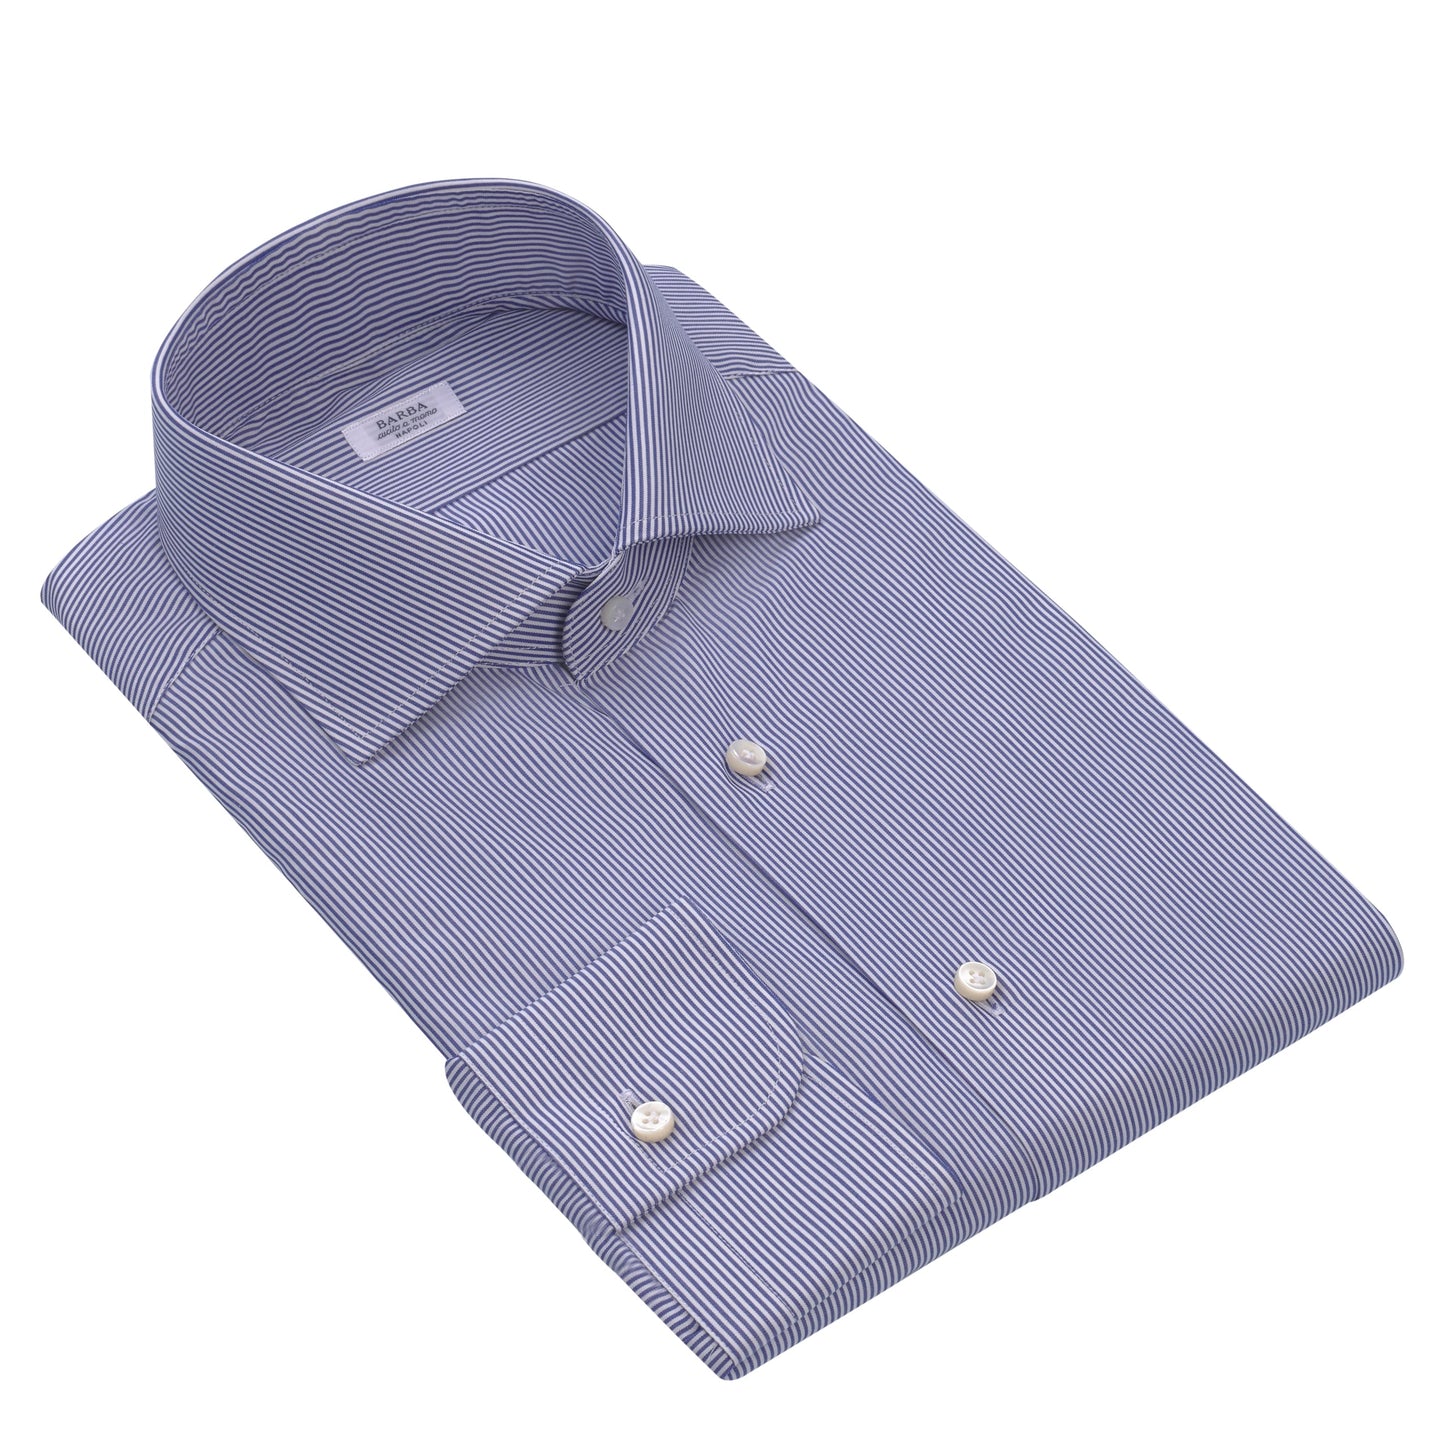 Barba Napoli Classic Striped Cotton Shirt in Blue and White - SARTALE